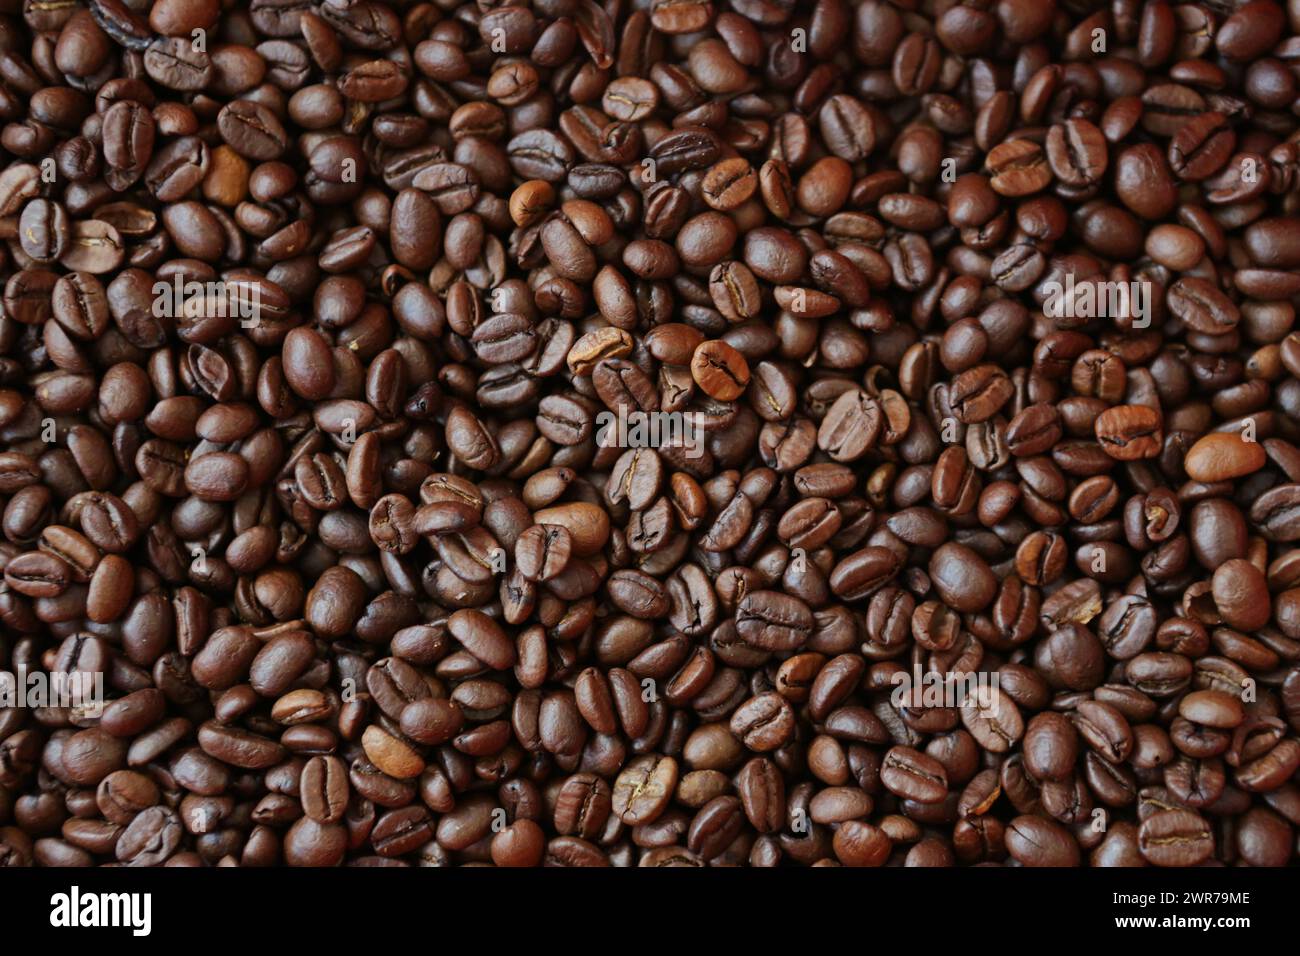 Symbolbild zum Thema Kaffee Hier: Haufen Kaffeebohnen *** immagine simbolica sul tema del caffè qui una pila di chicchi di caffè Foto Stock